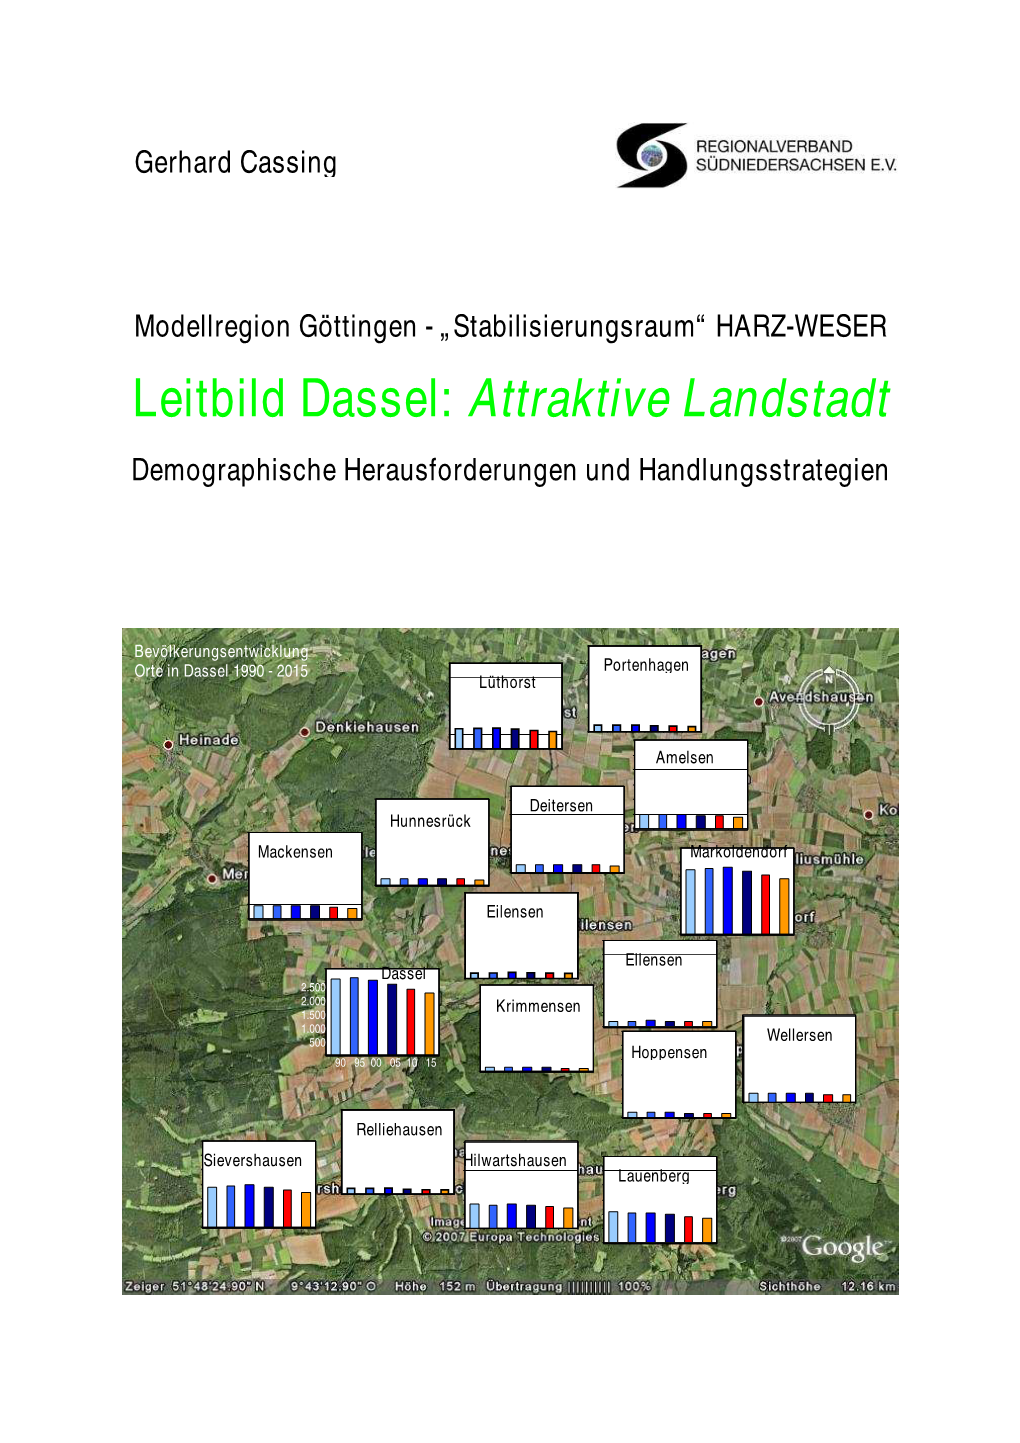 Leitbild Dassel: Attraktive Landstadt